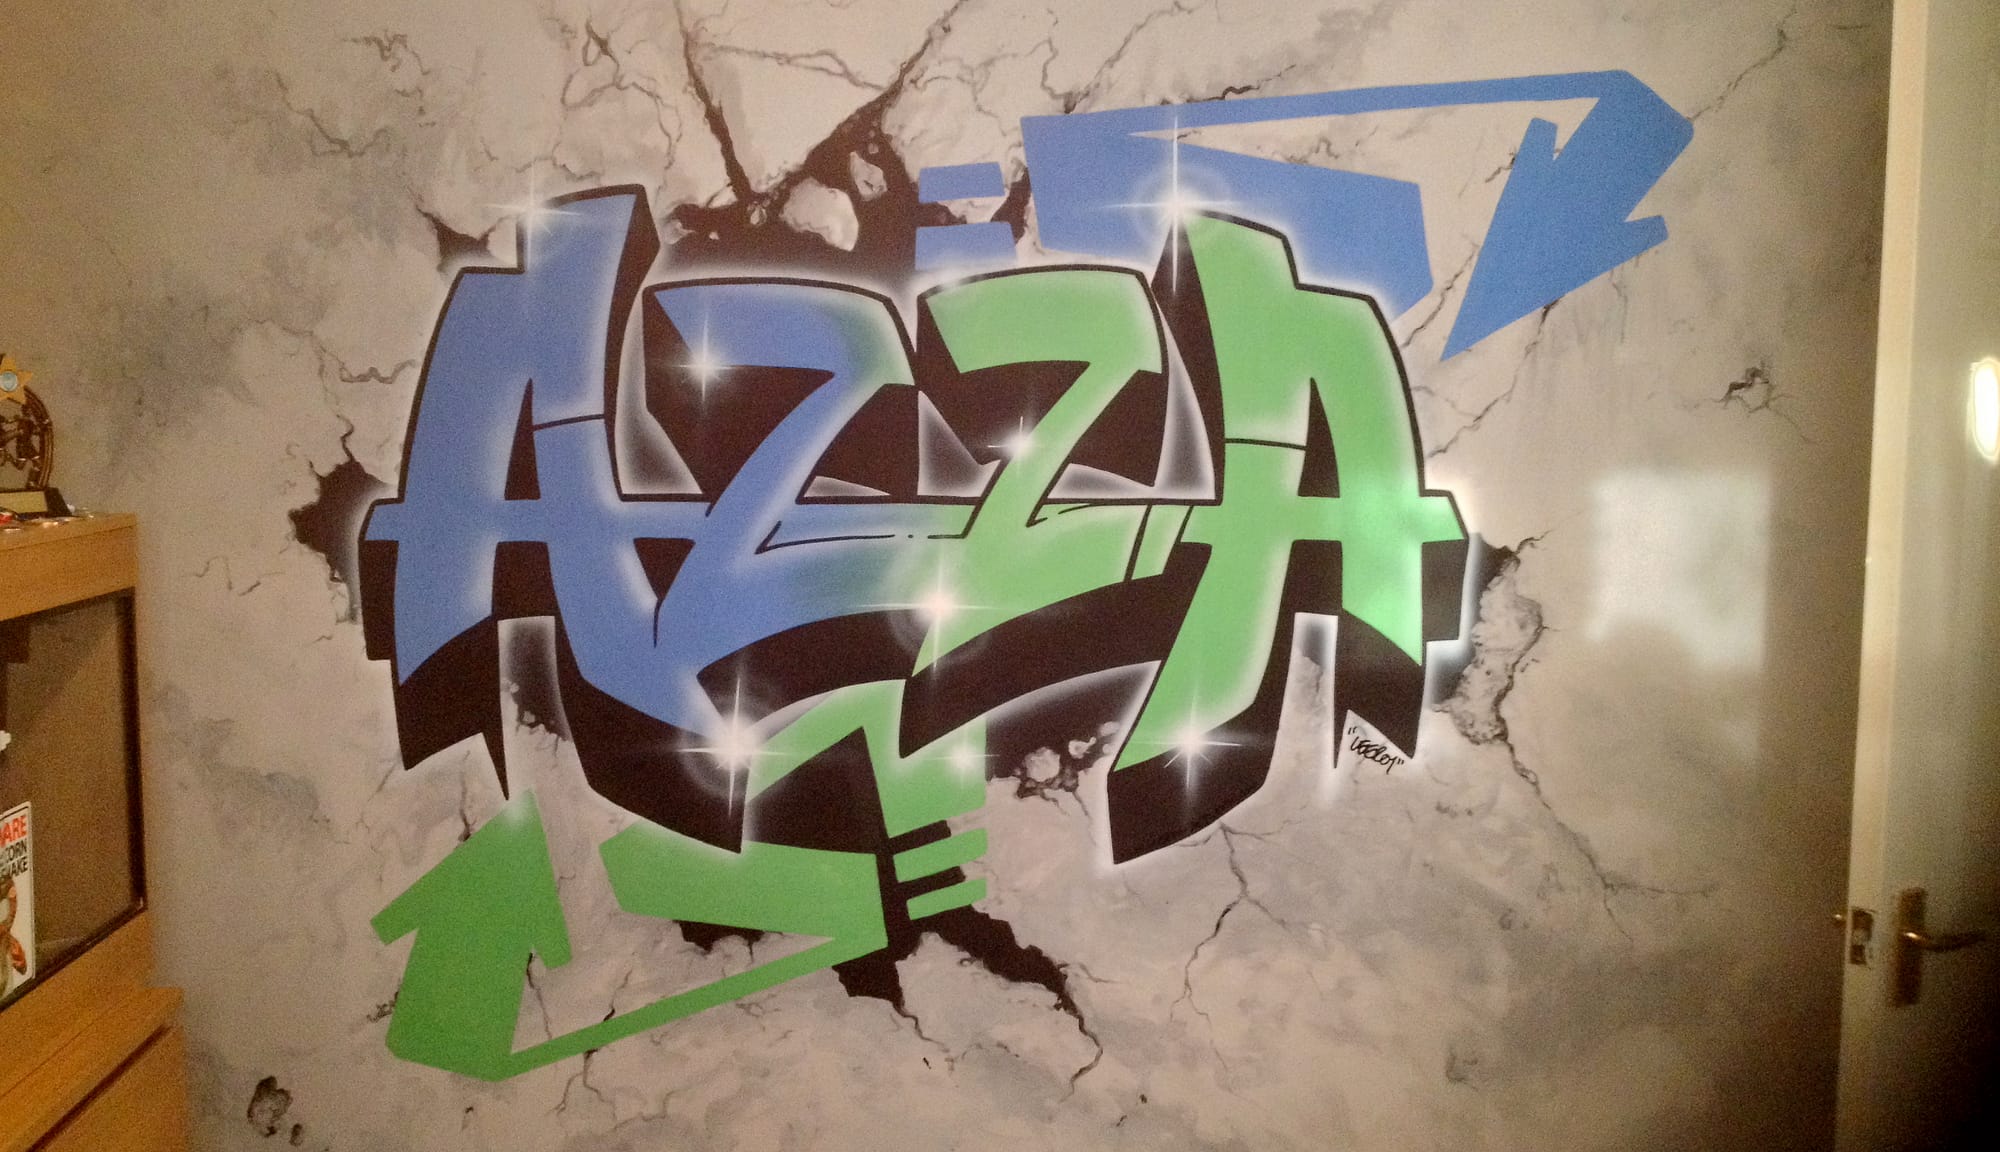 Azza Bespoke Graffiti